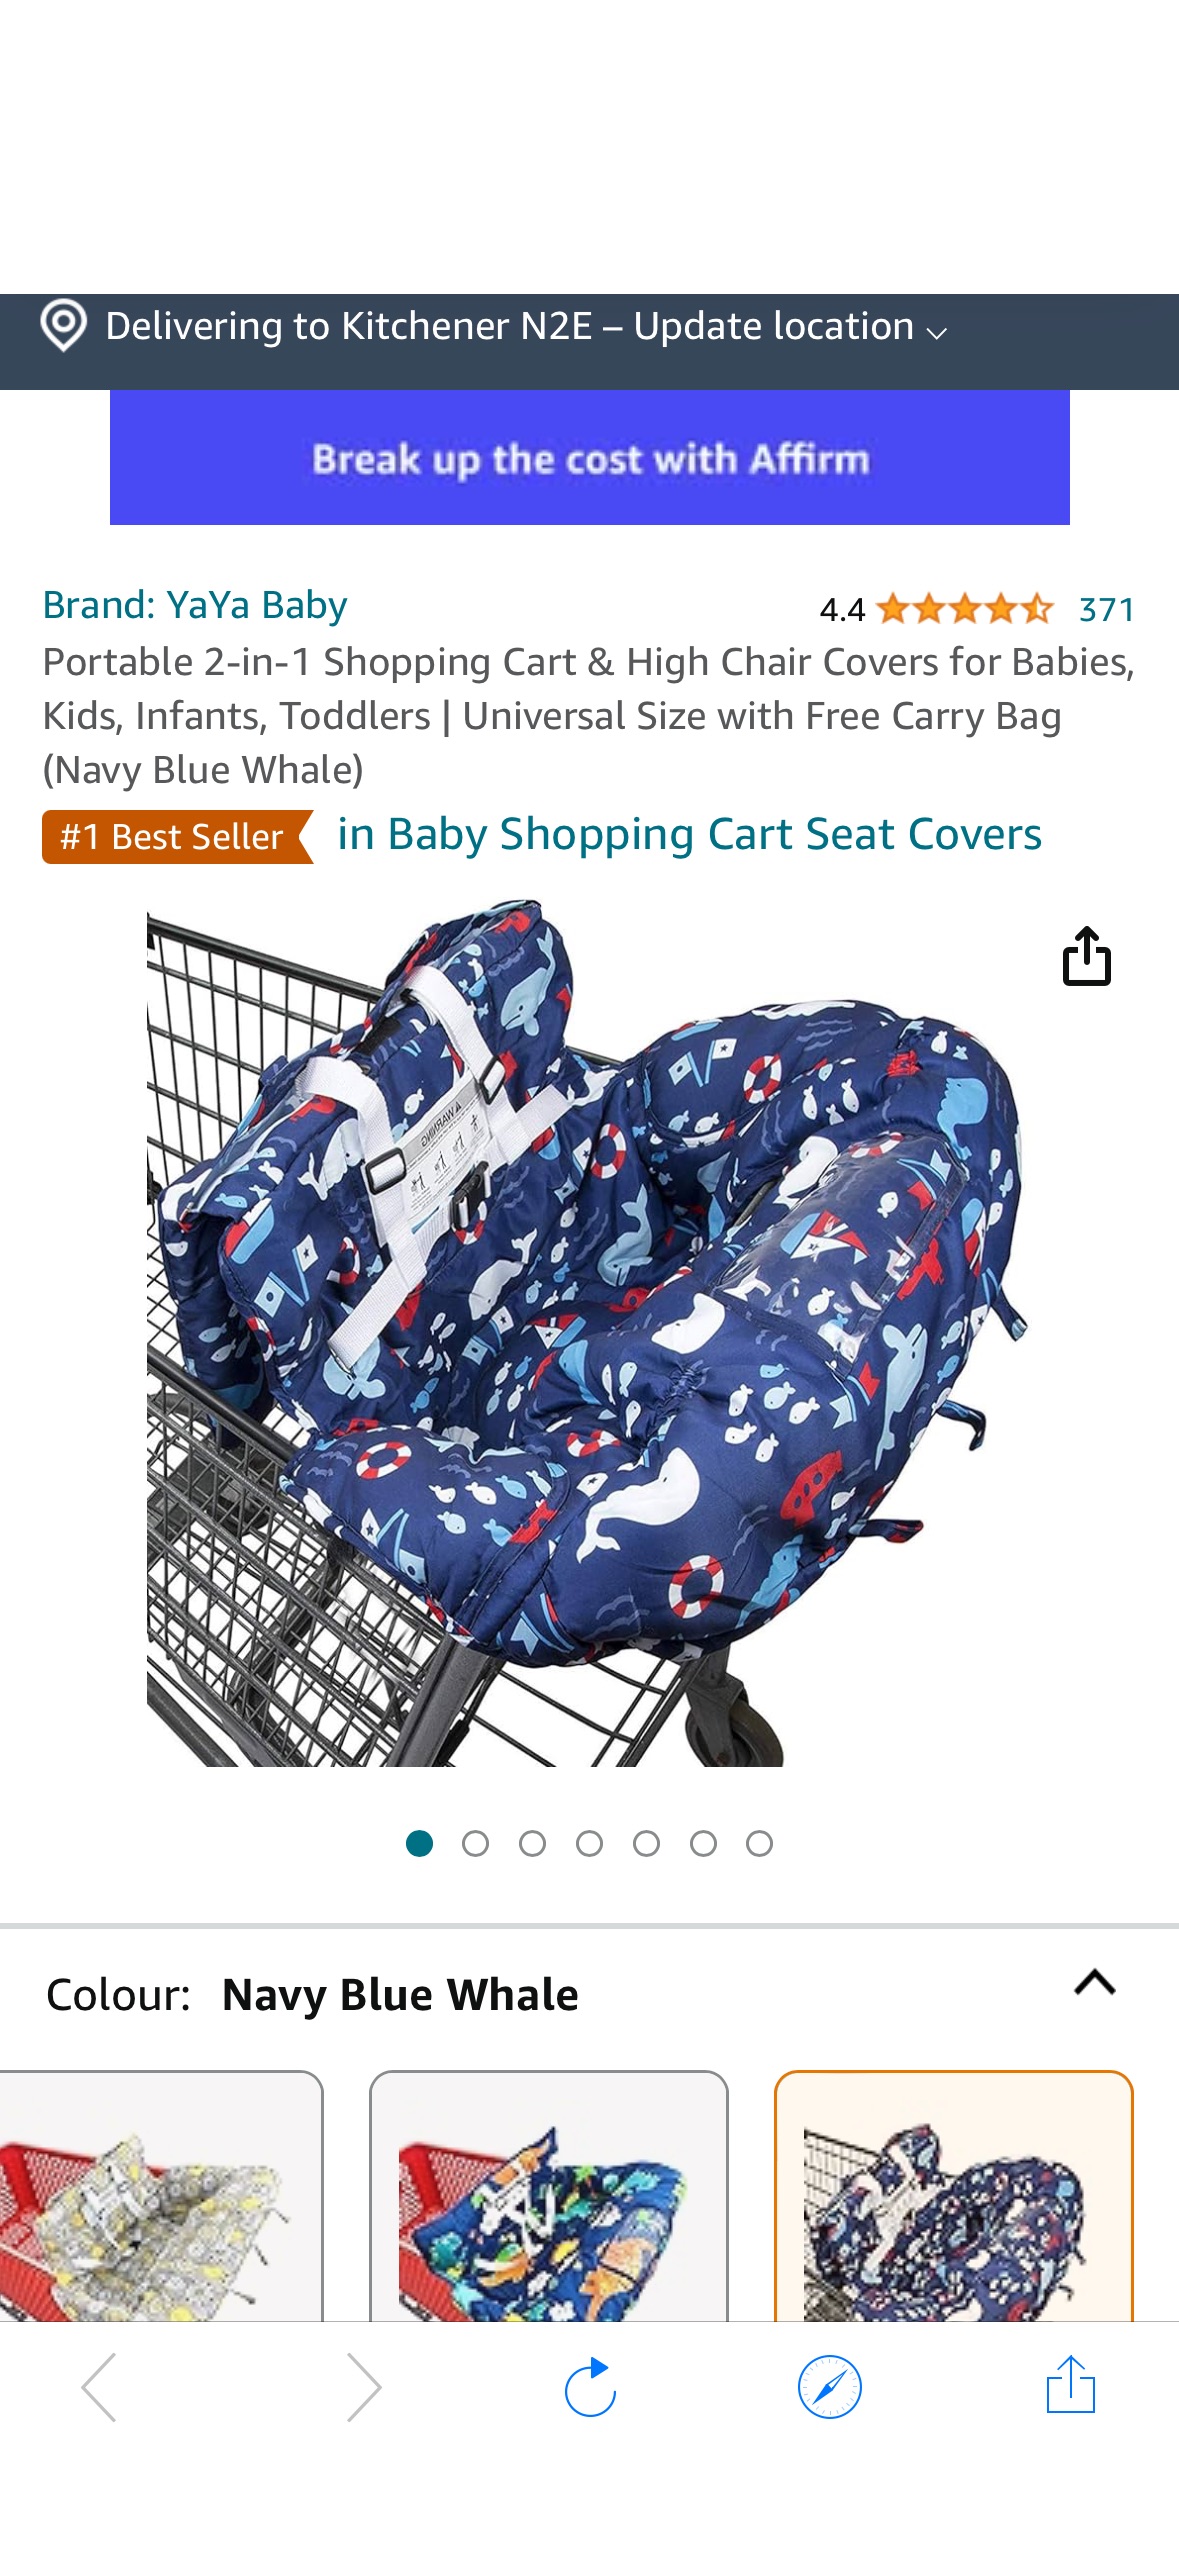 幼童家庭逛超市必备Portable 2-in-1 Shopping Cart & High Chair Covers for Babies, Kids, Infants, Toddlers | Universal Size with Free Carry Bag (Navy Blue Whale) : Amazon.ca: Baby